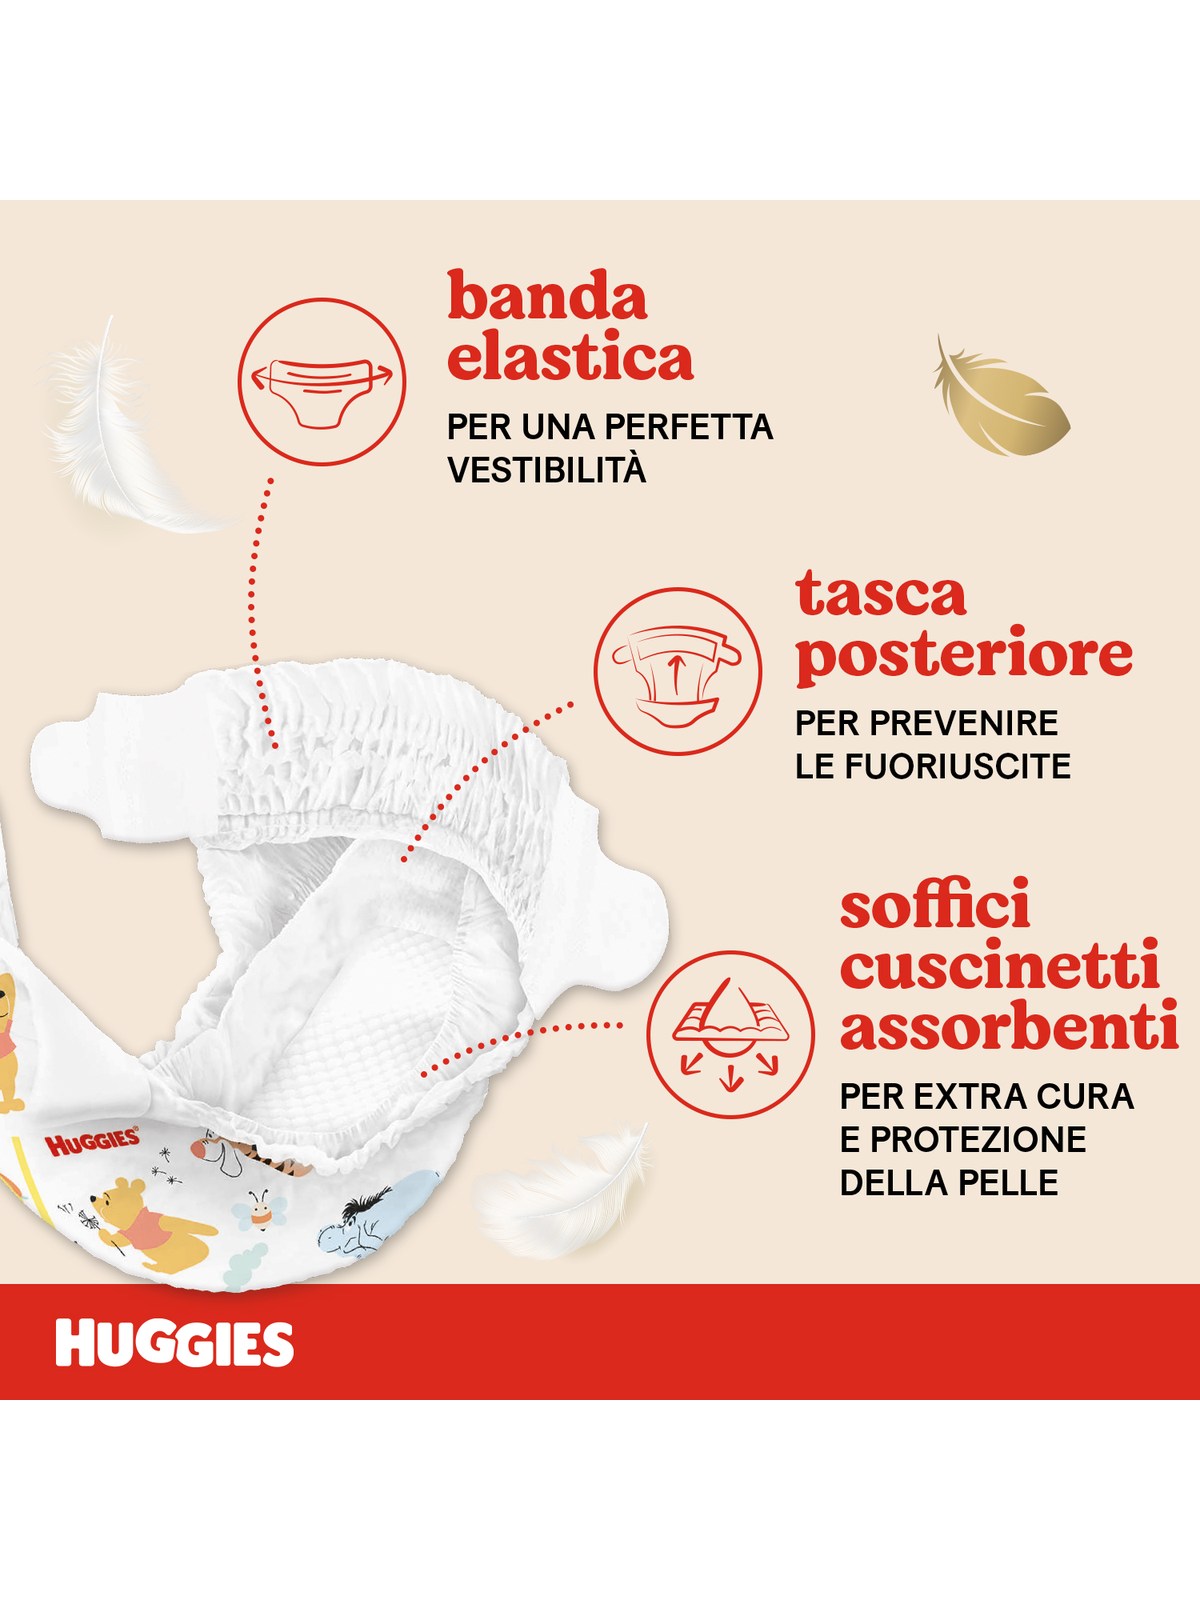 Huggies extra care bebè – pannolini taglia 2 (3-6 kg) – confezione da 40 pz - Huggies